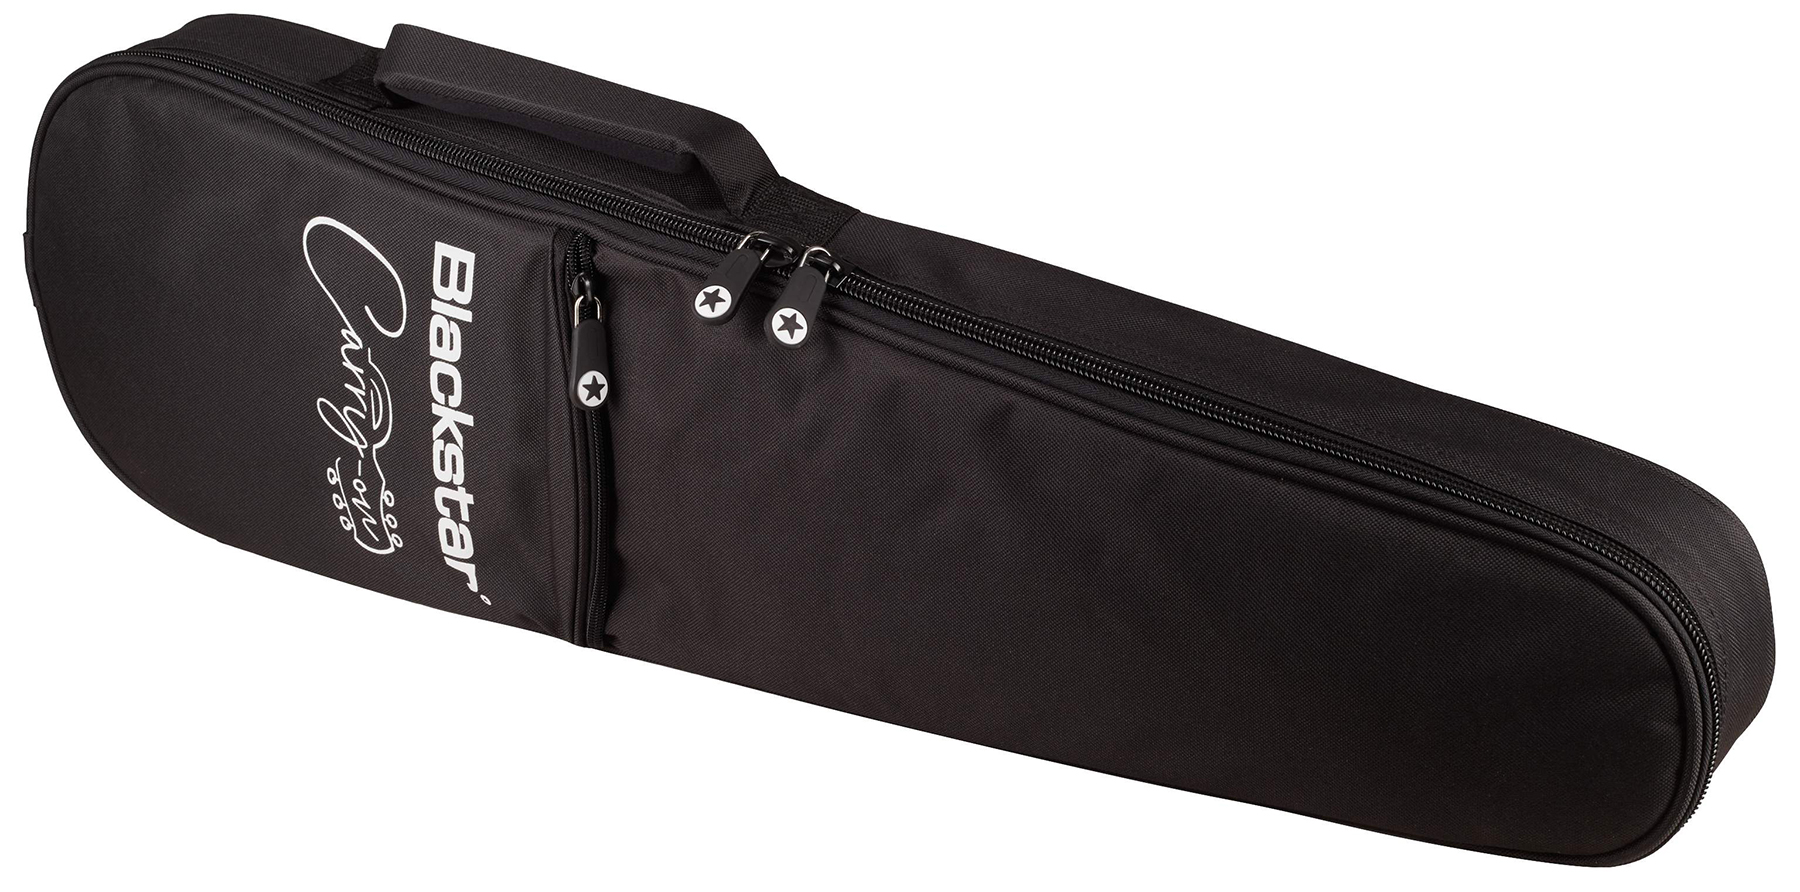 Blackstar Carry-on Travel Guitar Standard Pack +amplug2 Fly +housse - Jet Black - Packs guitarra eléctrica - Variation 8